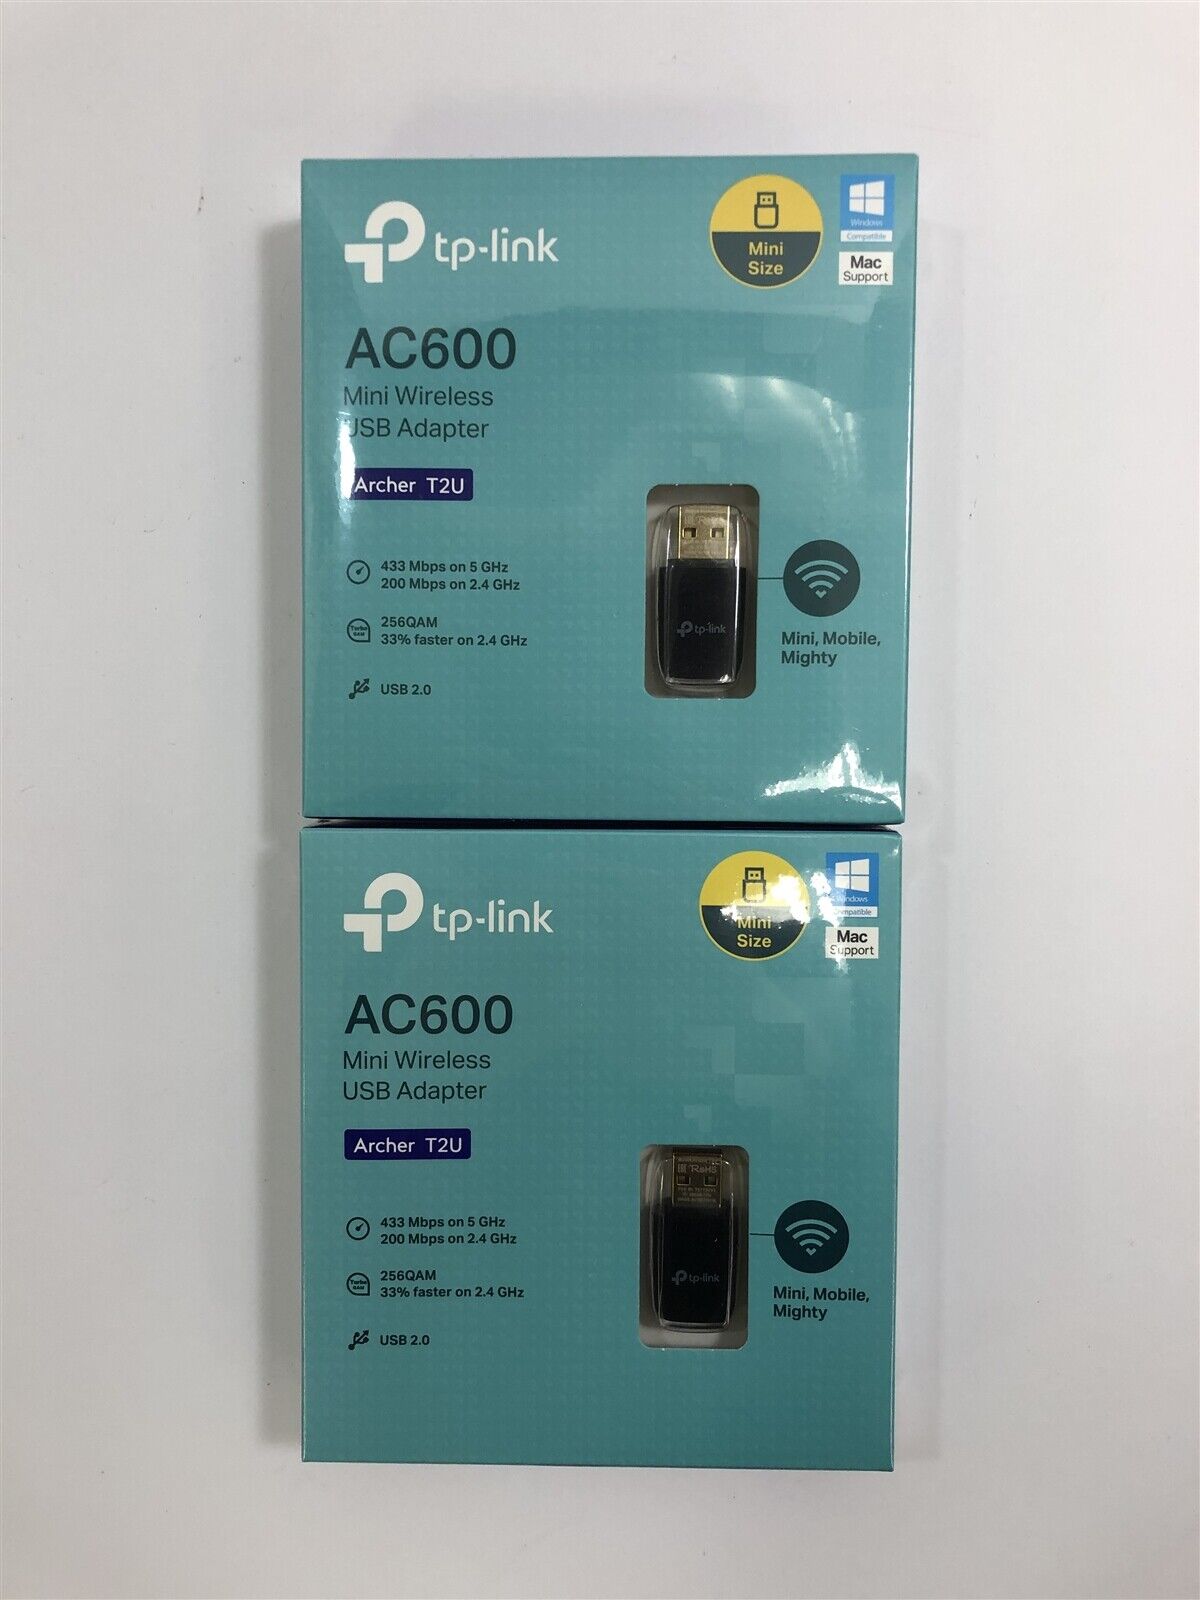 Lot of 2 New TP-Link AC600 Archer T2U Mini USB WiFi Adapter